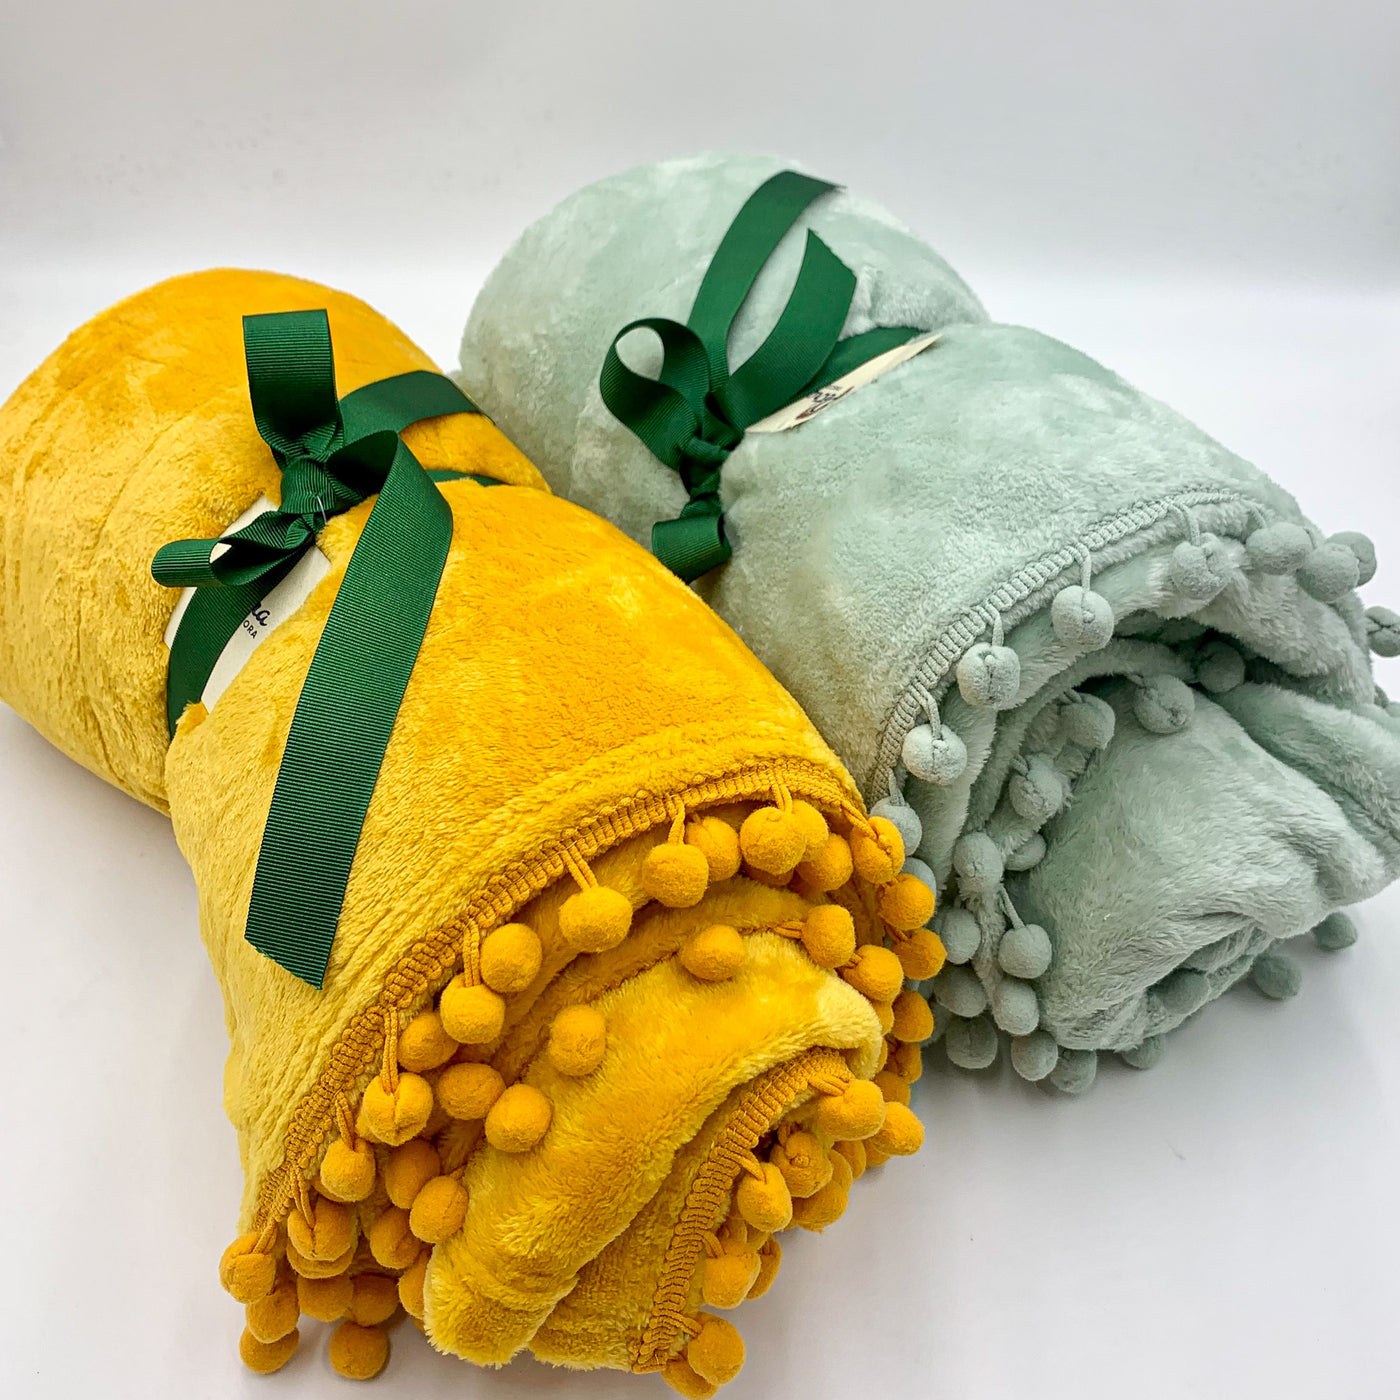 Textil Mantas y plaids Fibras sintéticas Amarillo